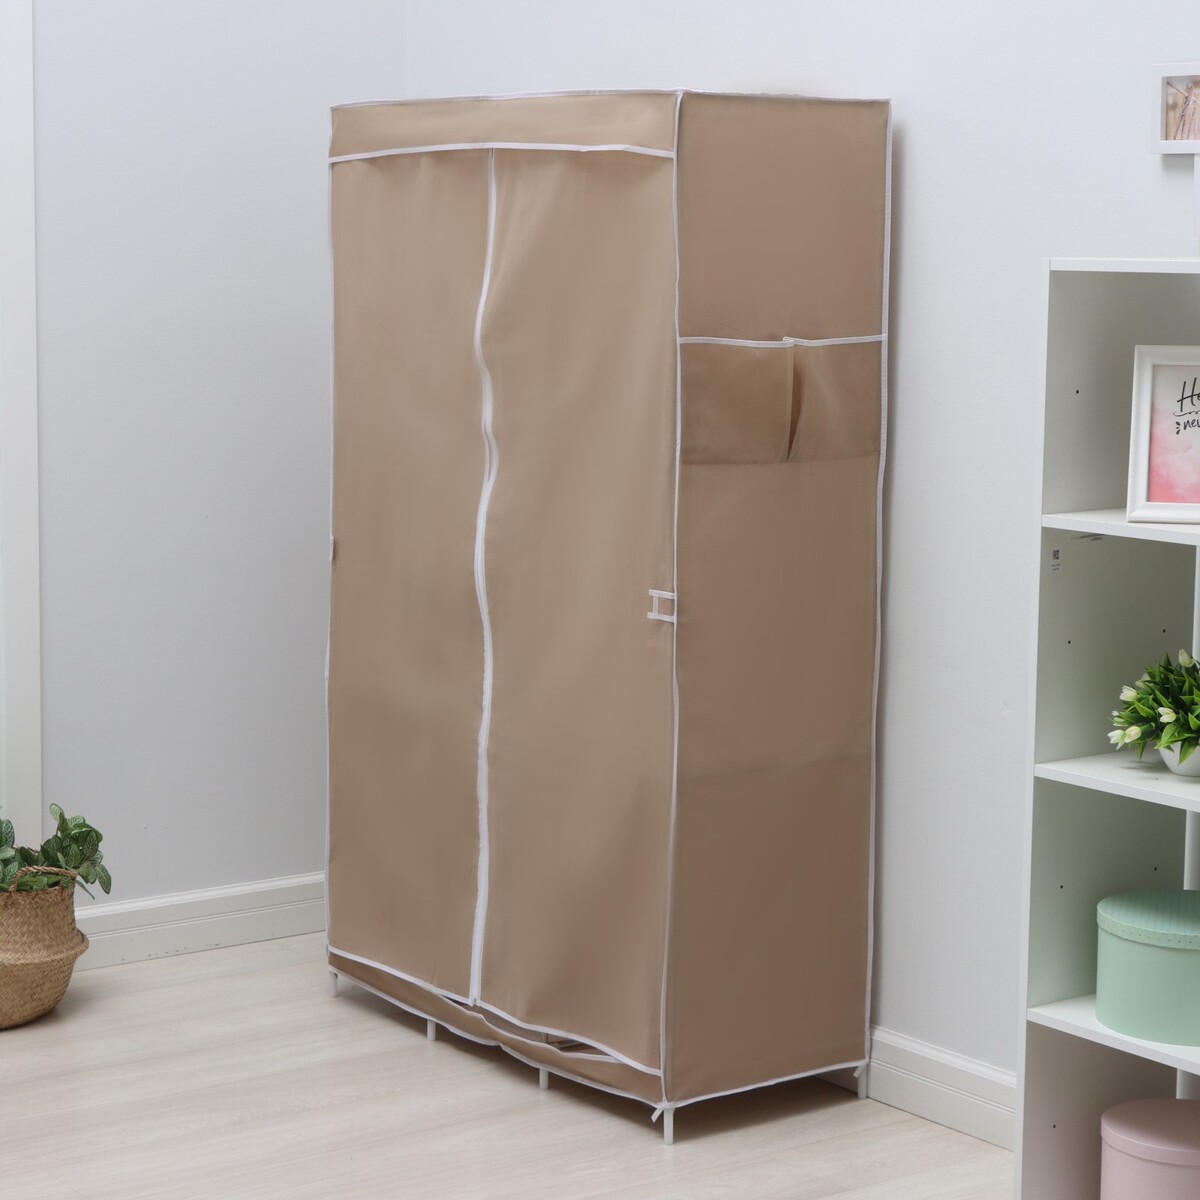 Шкаф тканевый каркасный, складной ladо́m, 103×45×165 см, цвет бежевый шкаф roba в детскую felicia